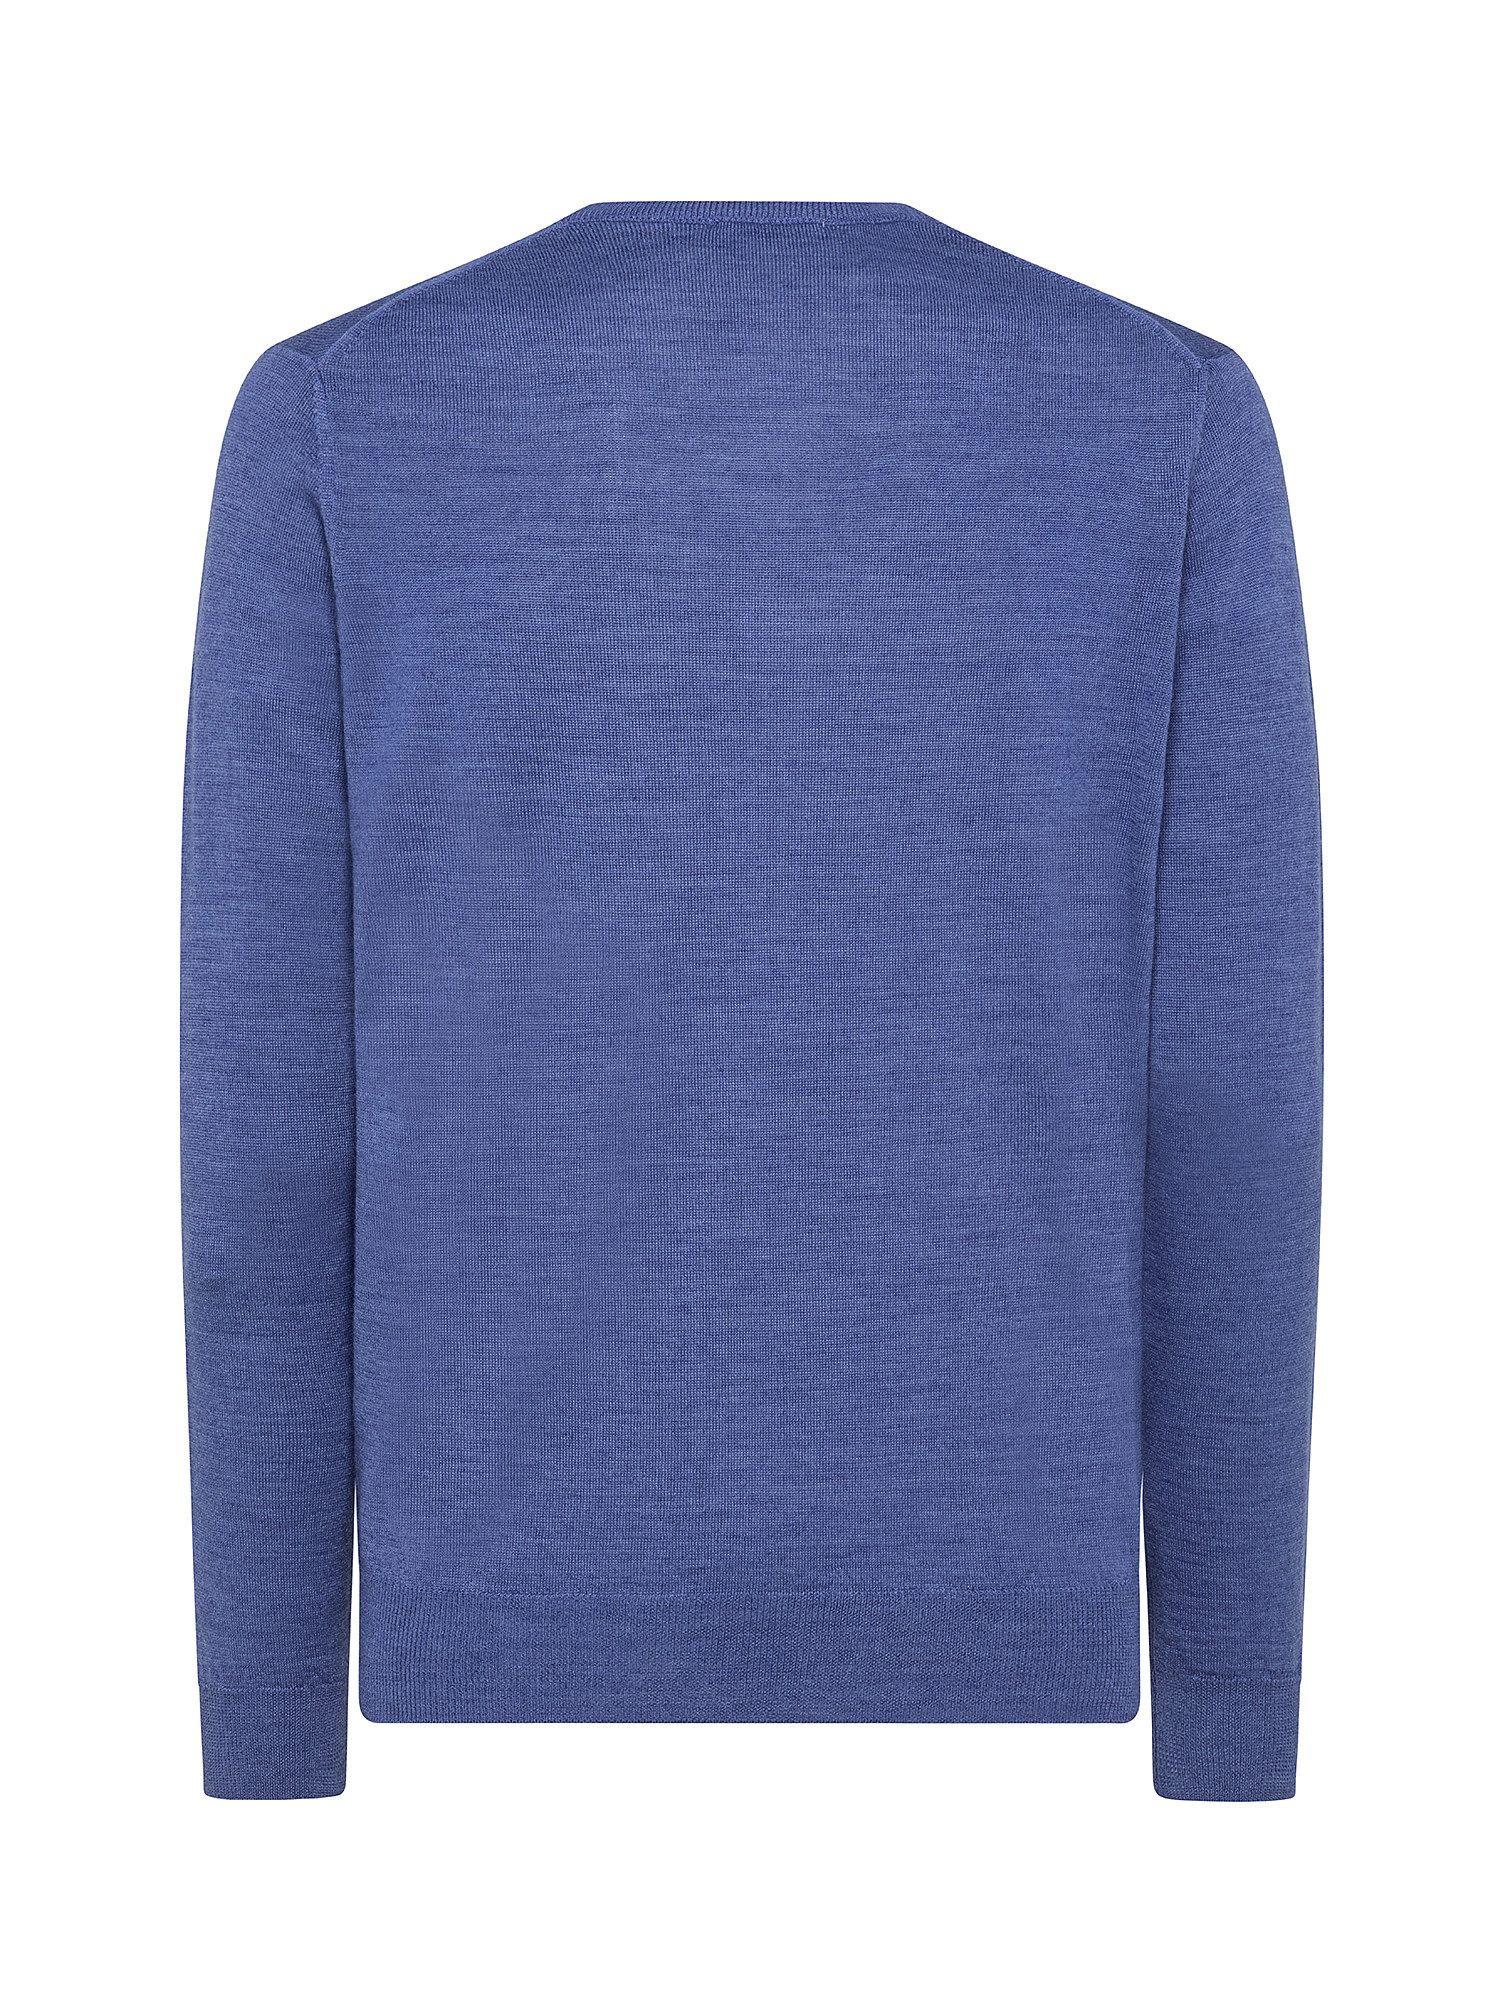 Merino Blend crewneck sweater - Machine washable, Aviation Blue, large image number 1